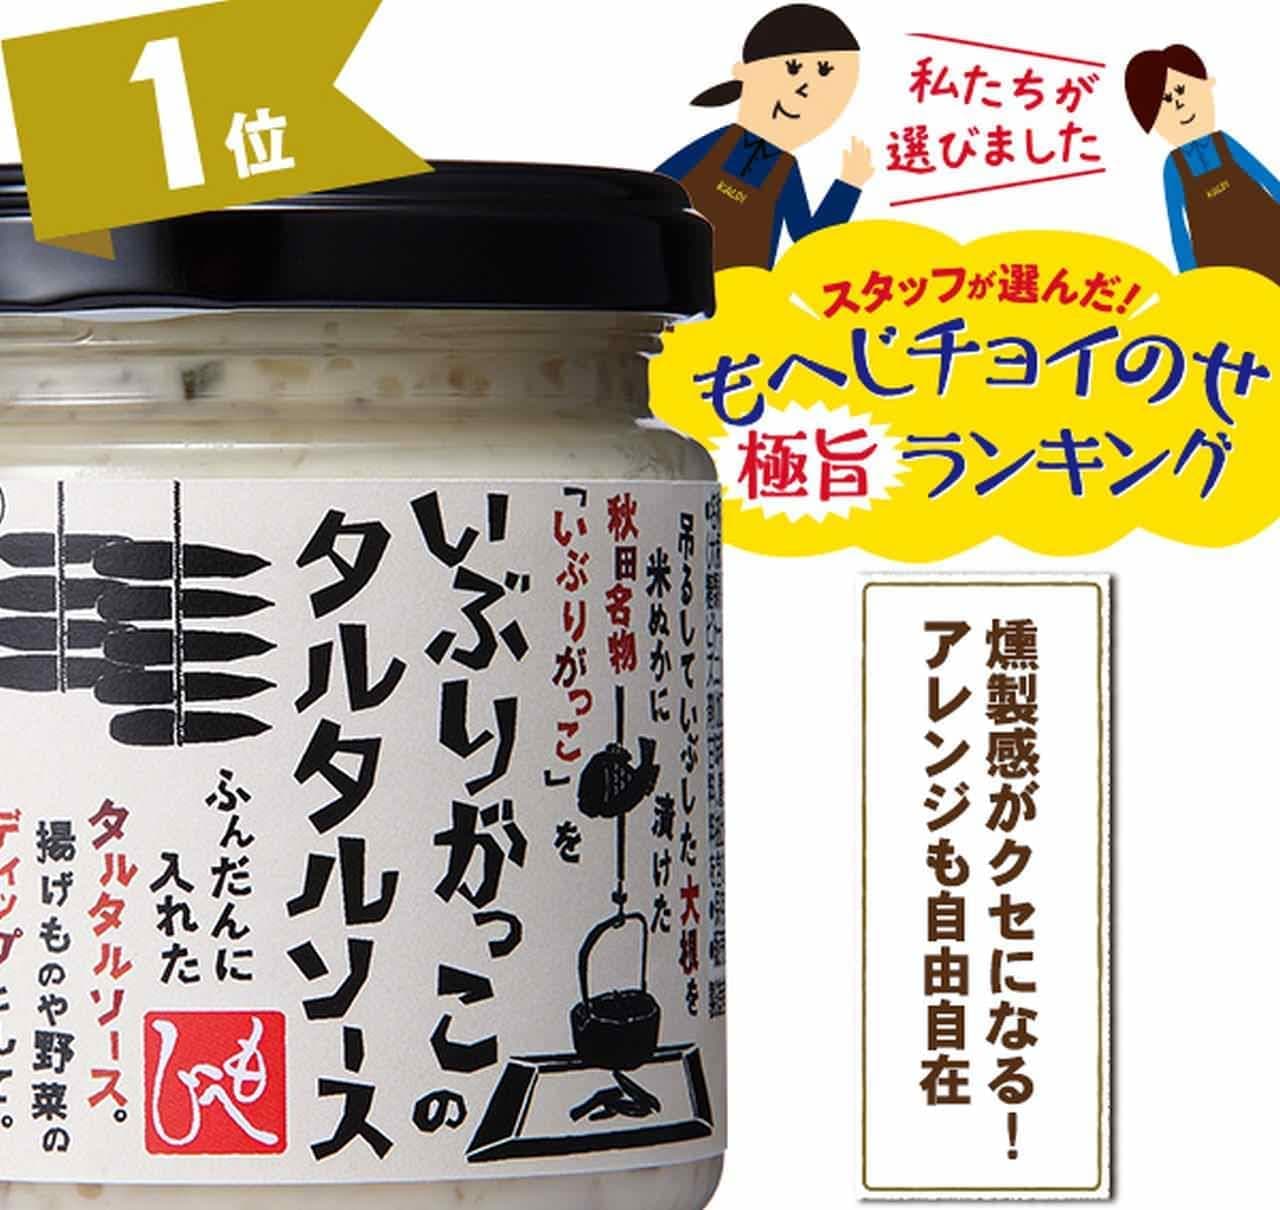 KALDI "Iburi-gakko Tartar Sauce"